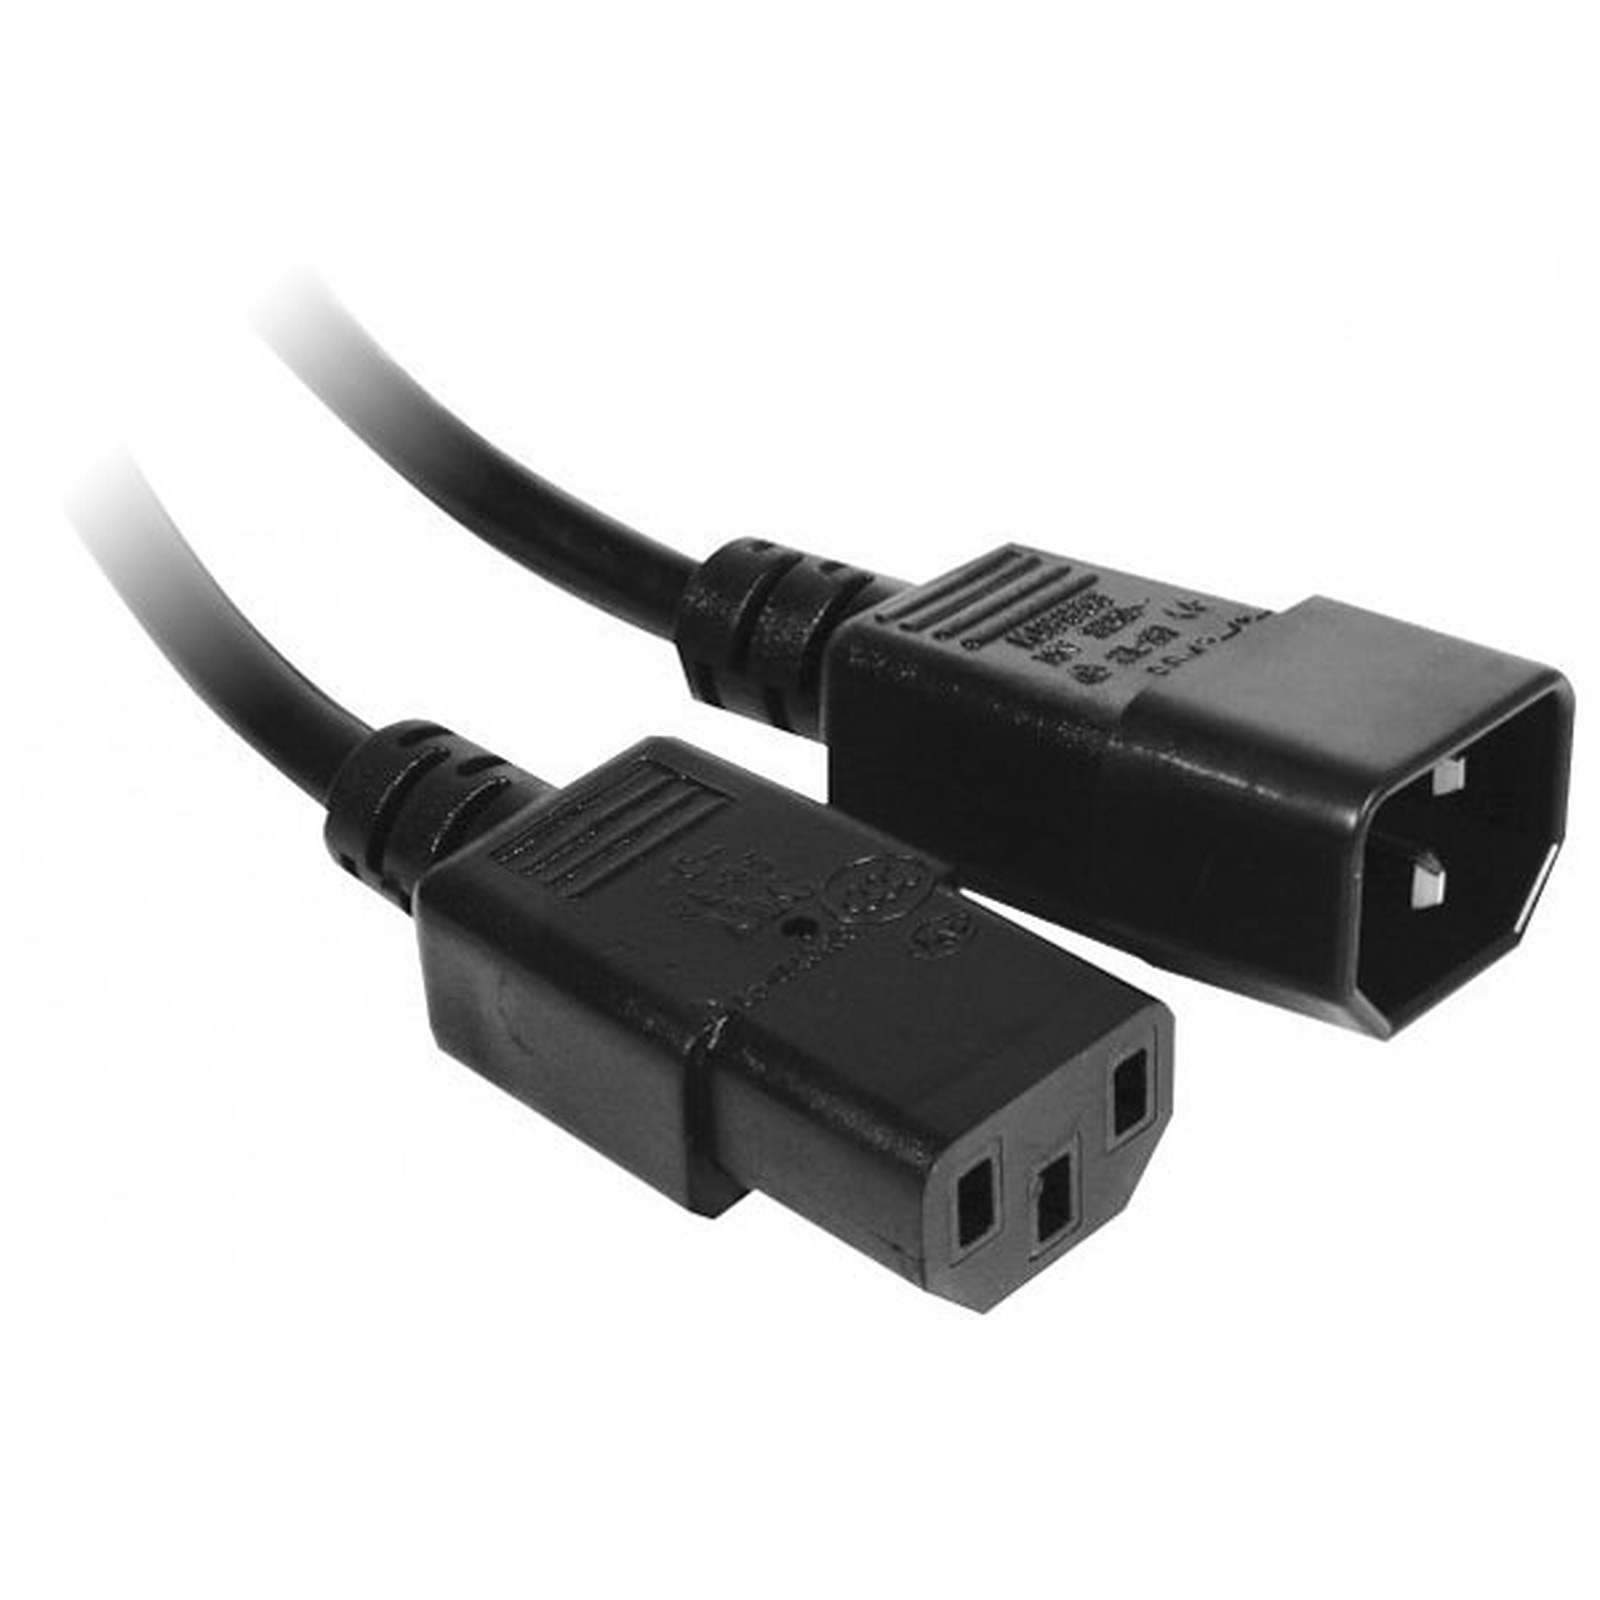 Rallonge d'alimentation pour PC, moniteur et onduleur (3 m) - (coloris noir) - Cable Secteur Generique